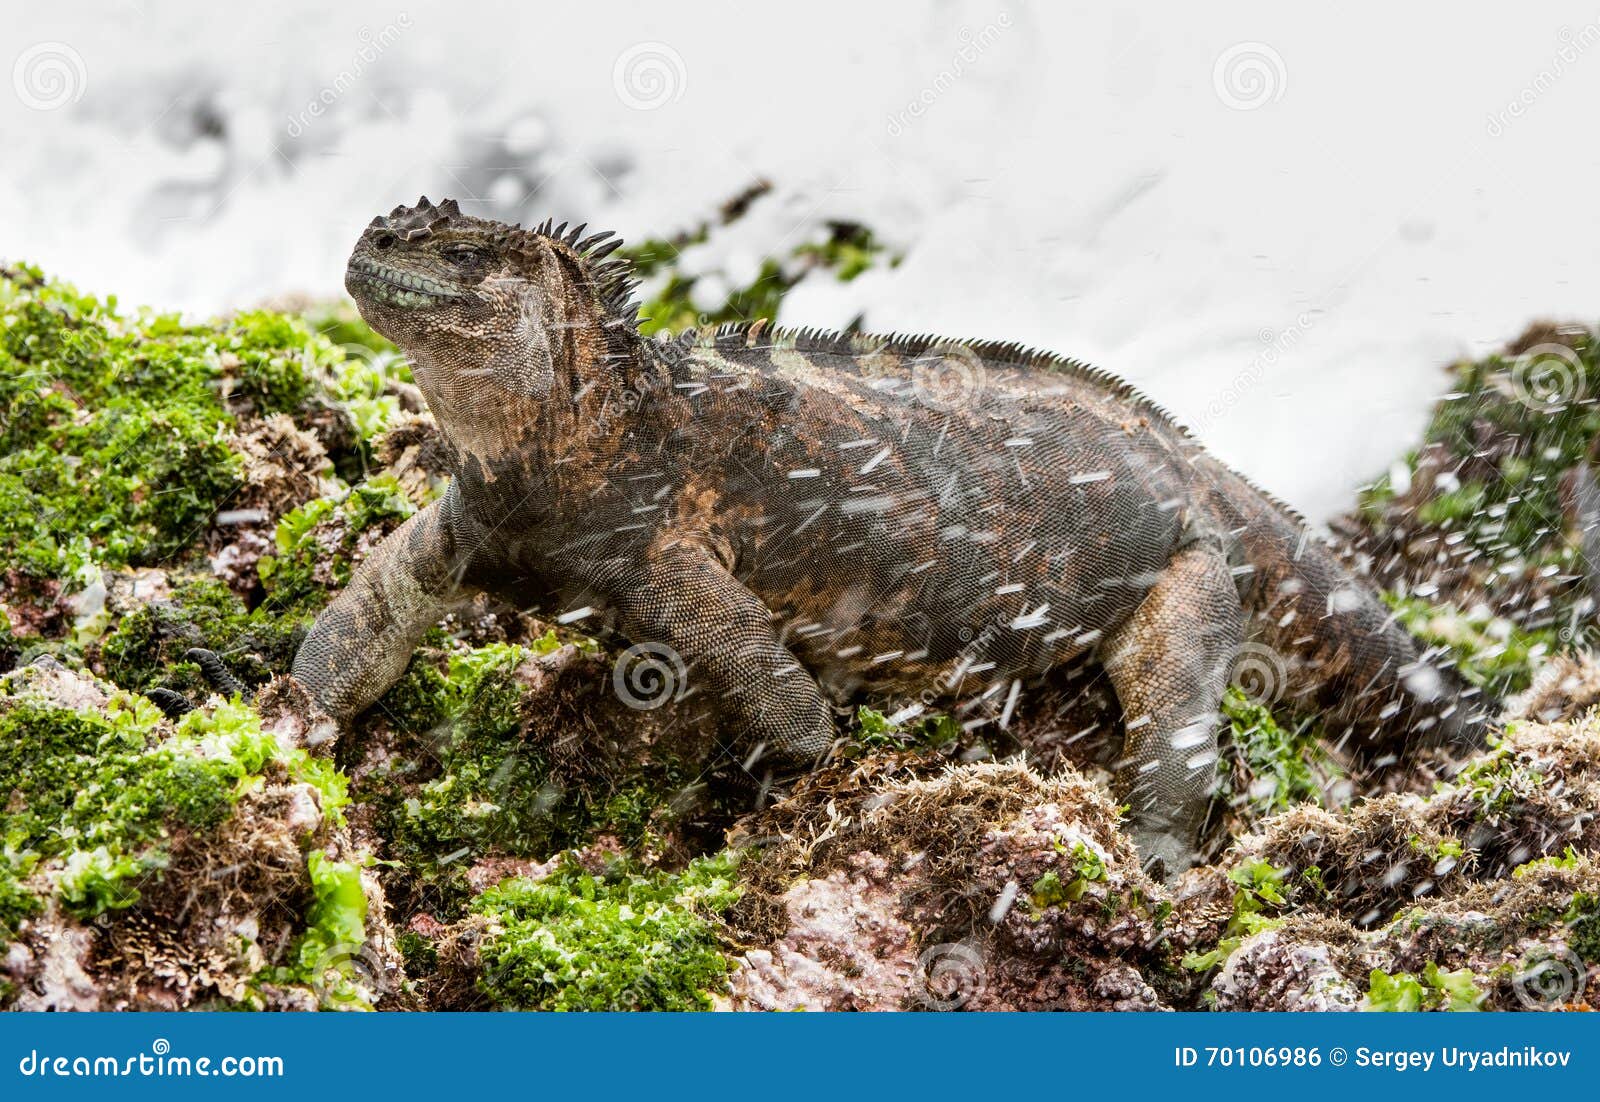 the marine iguana (amblyrhynchus cristatus) on the stony lava coast.